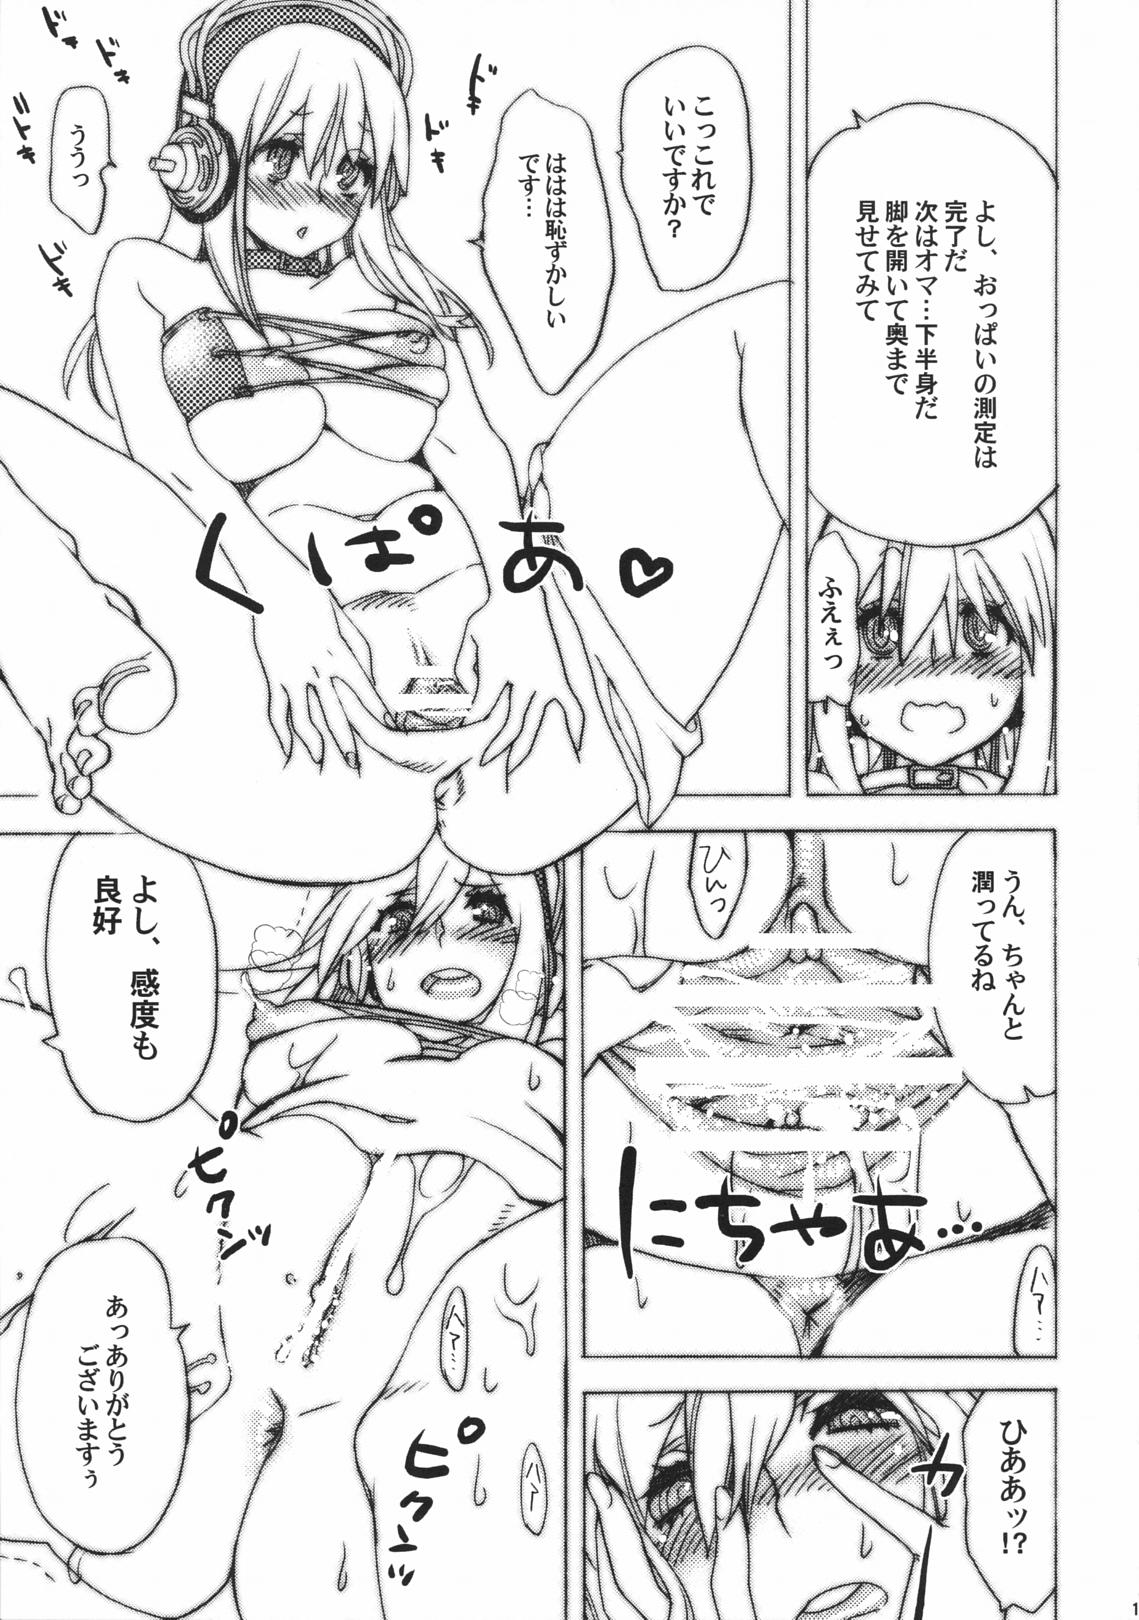 Mediumtits Shirokoro Monochro - Super sonico Caught - Page 12